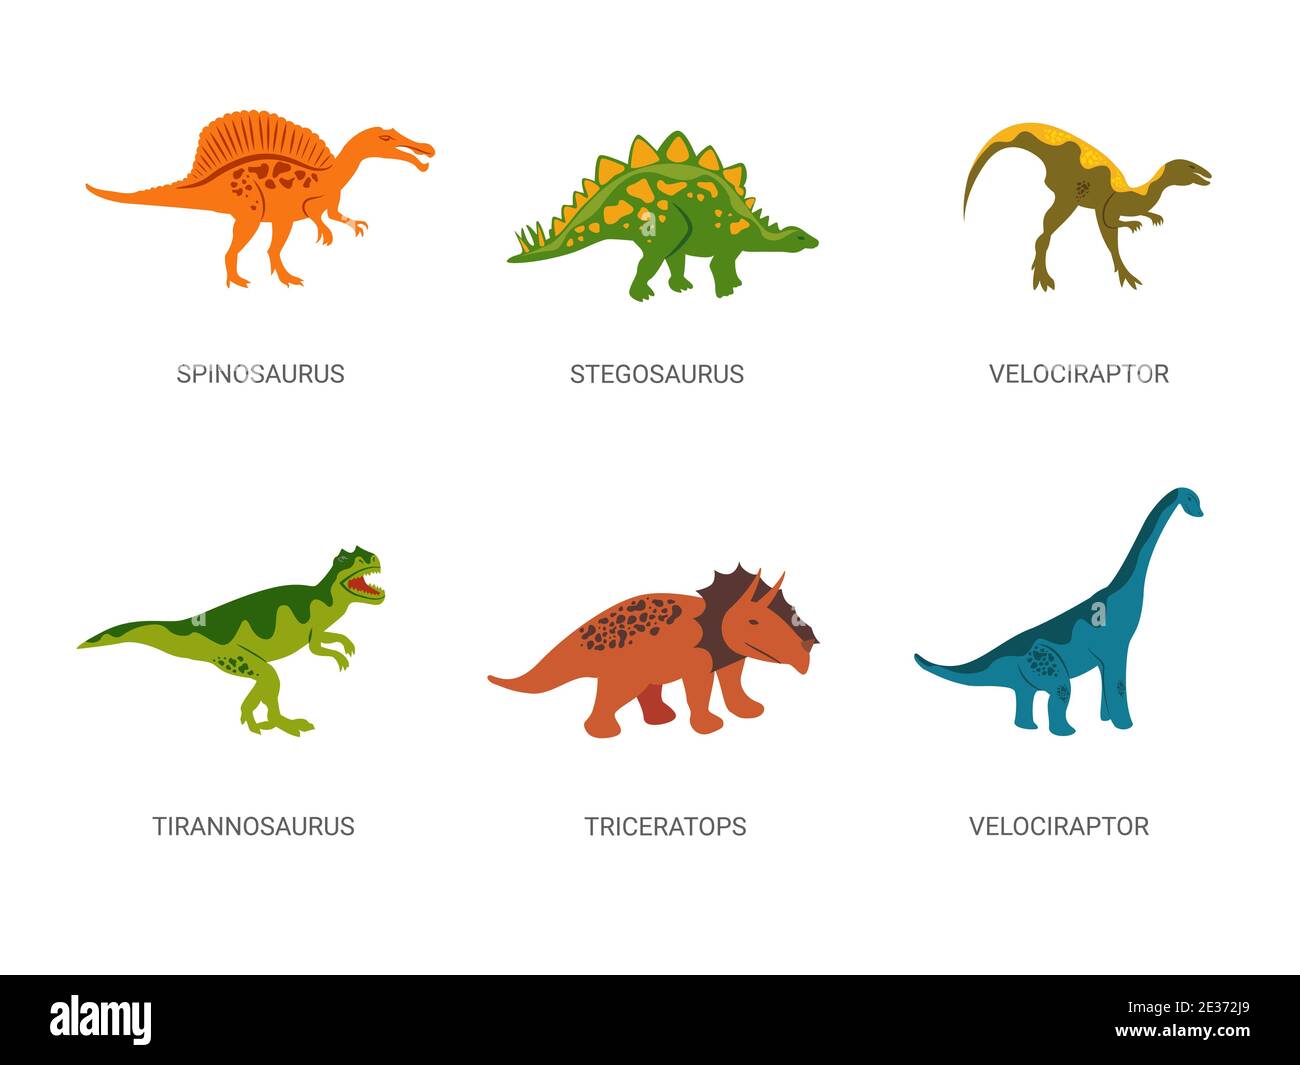 Dinosaurios del período Jurásico. Potente spinosaurus rojo con estegosaurus verde herbívoro. Ilustración del Vector